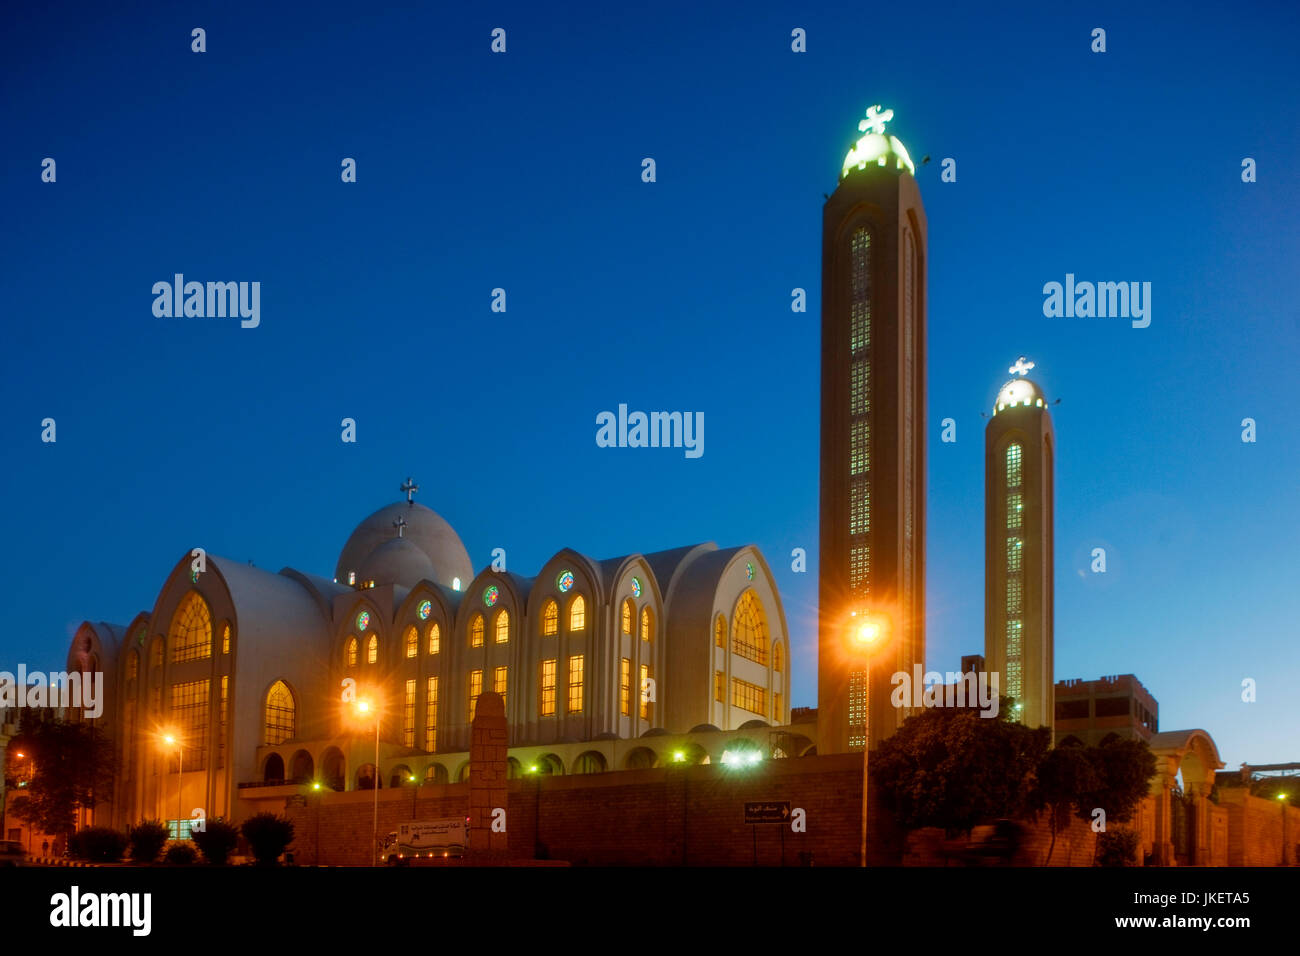 Aegypten, Assuan, Koptisch-orthodoxe Kathedrale Stock Photo